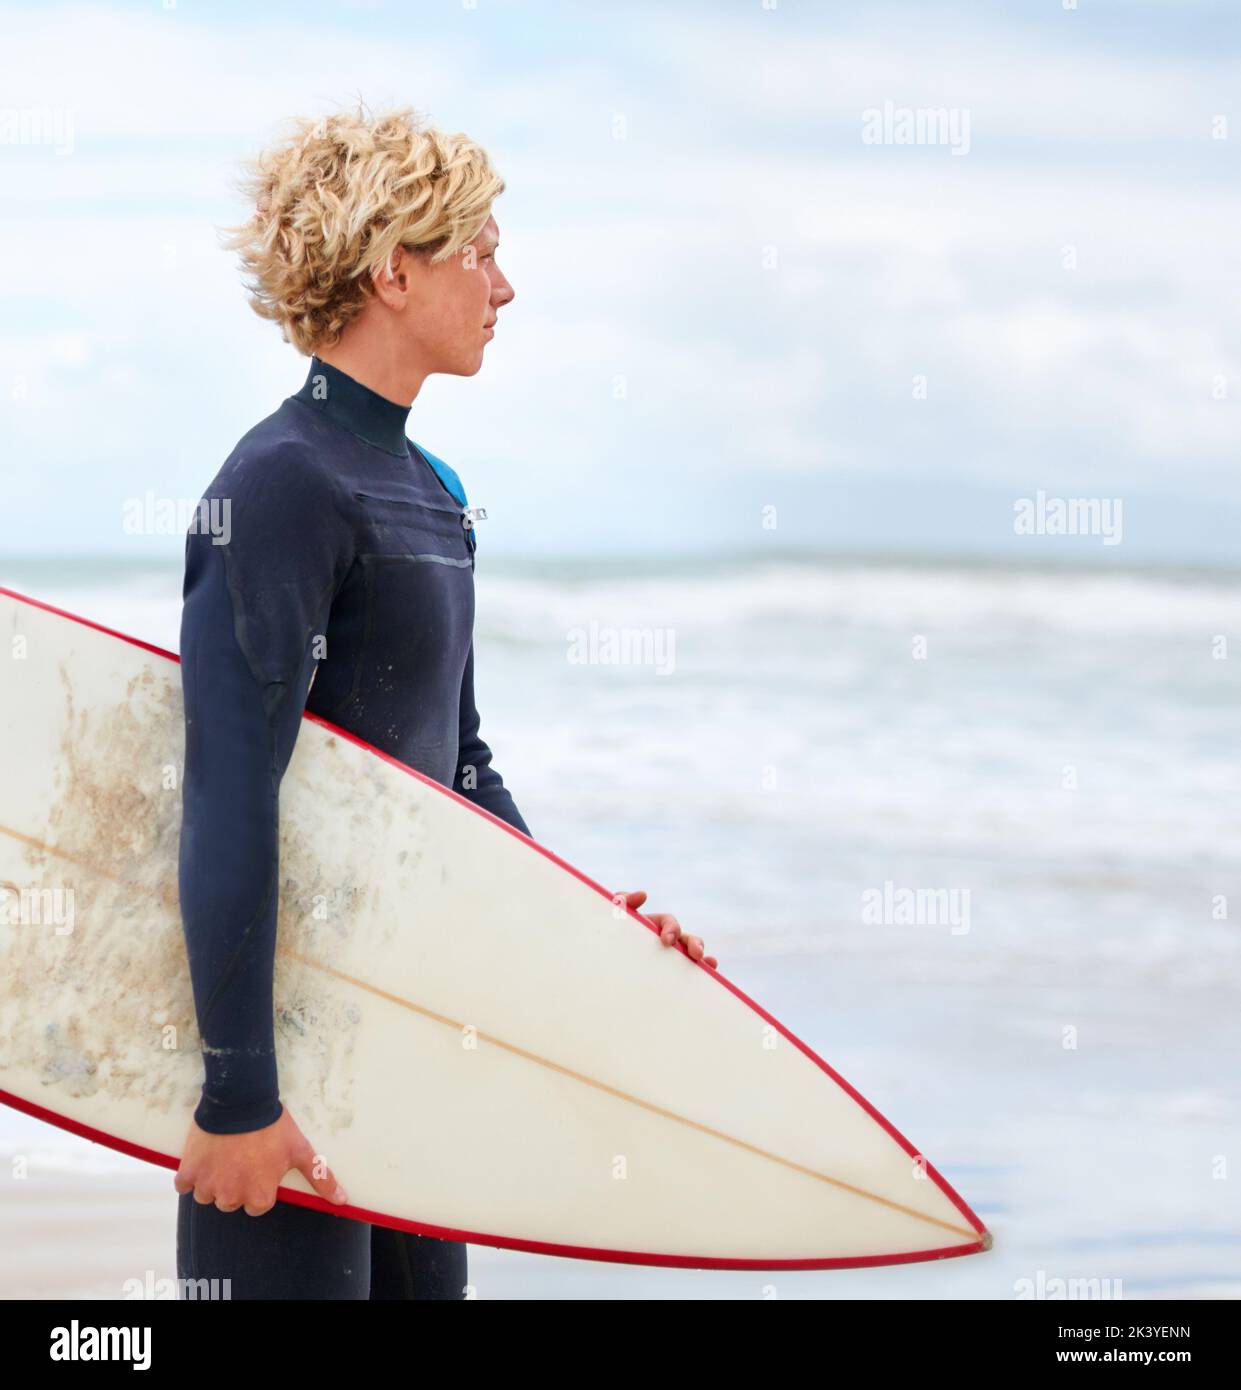 È sempre una buona giornata per fare surf. Un giovane surfista in piedi sulla spiaggia con l'oceano sullo sfondo. Foto Stock